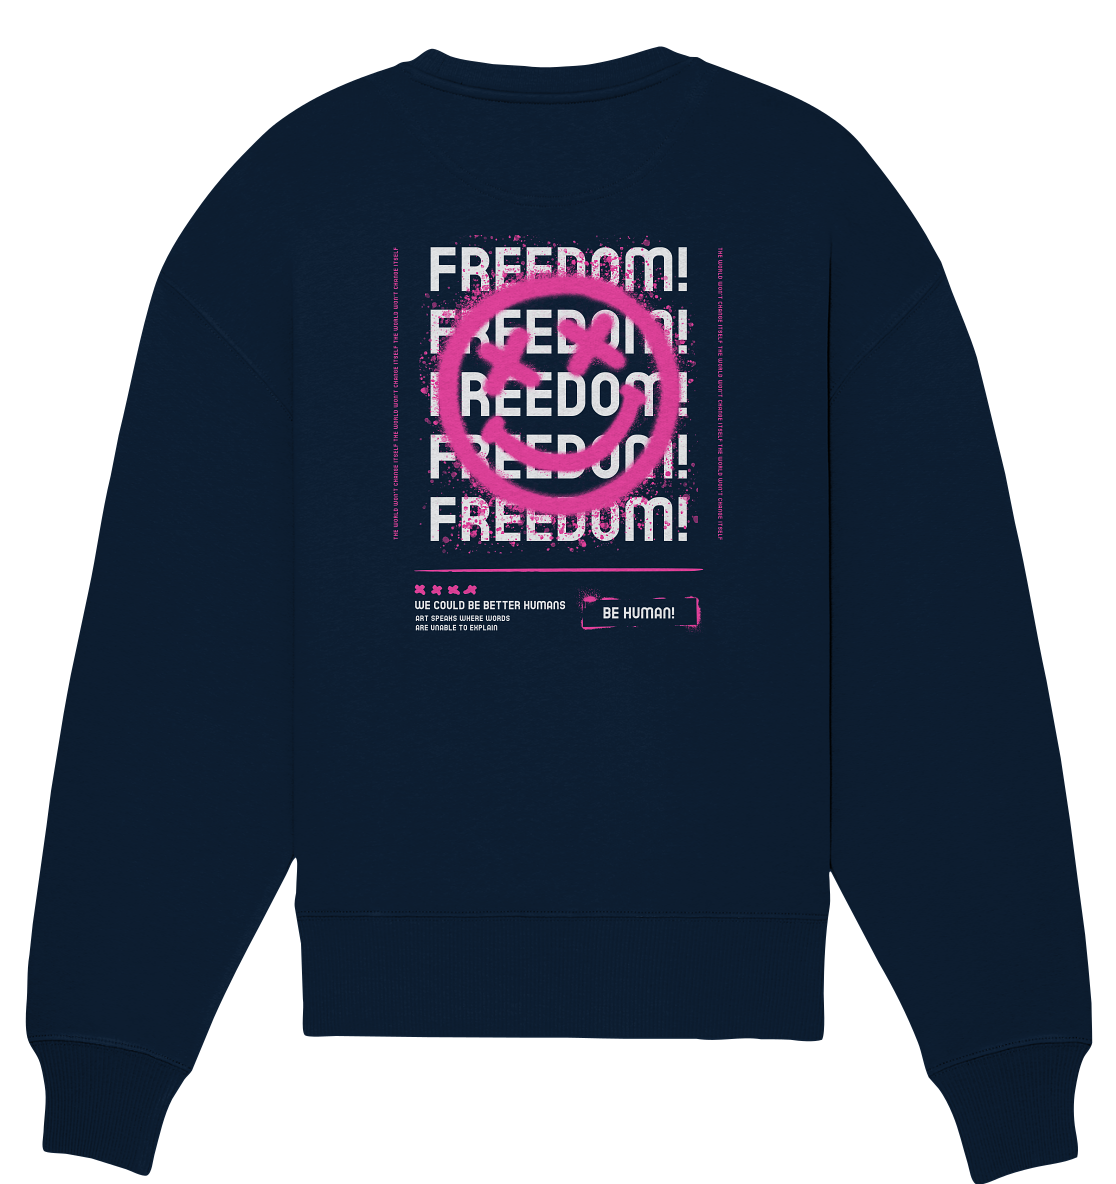 Freedom - Organic Oversize Sweatshirt